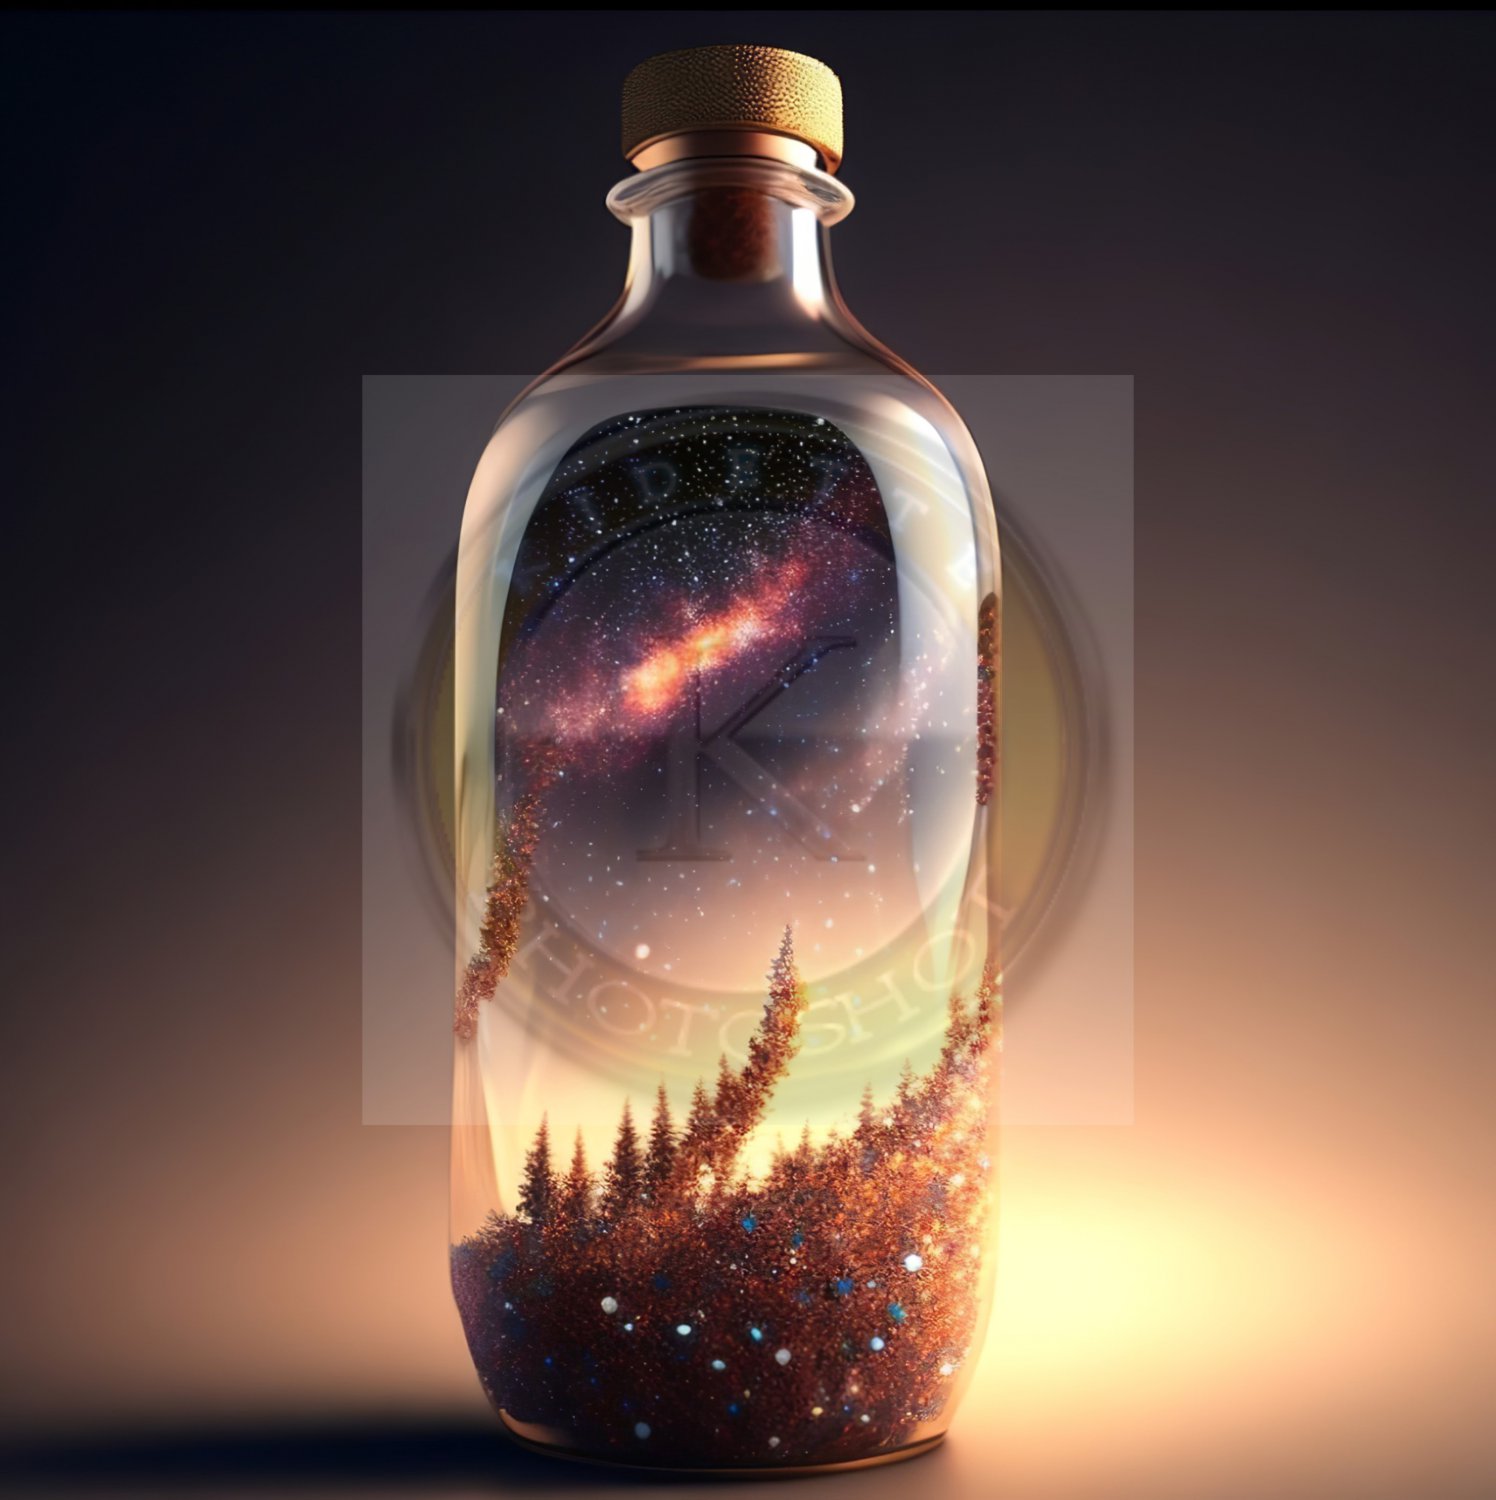 Galaxy in the bottle